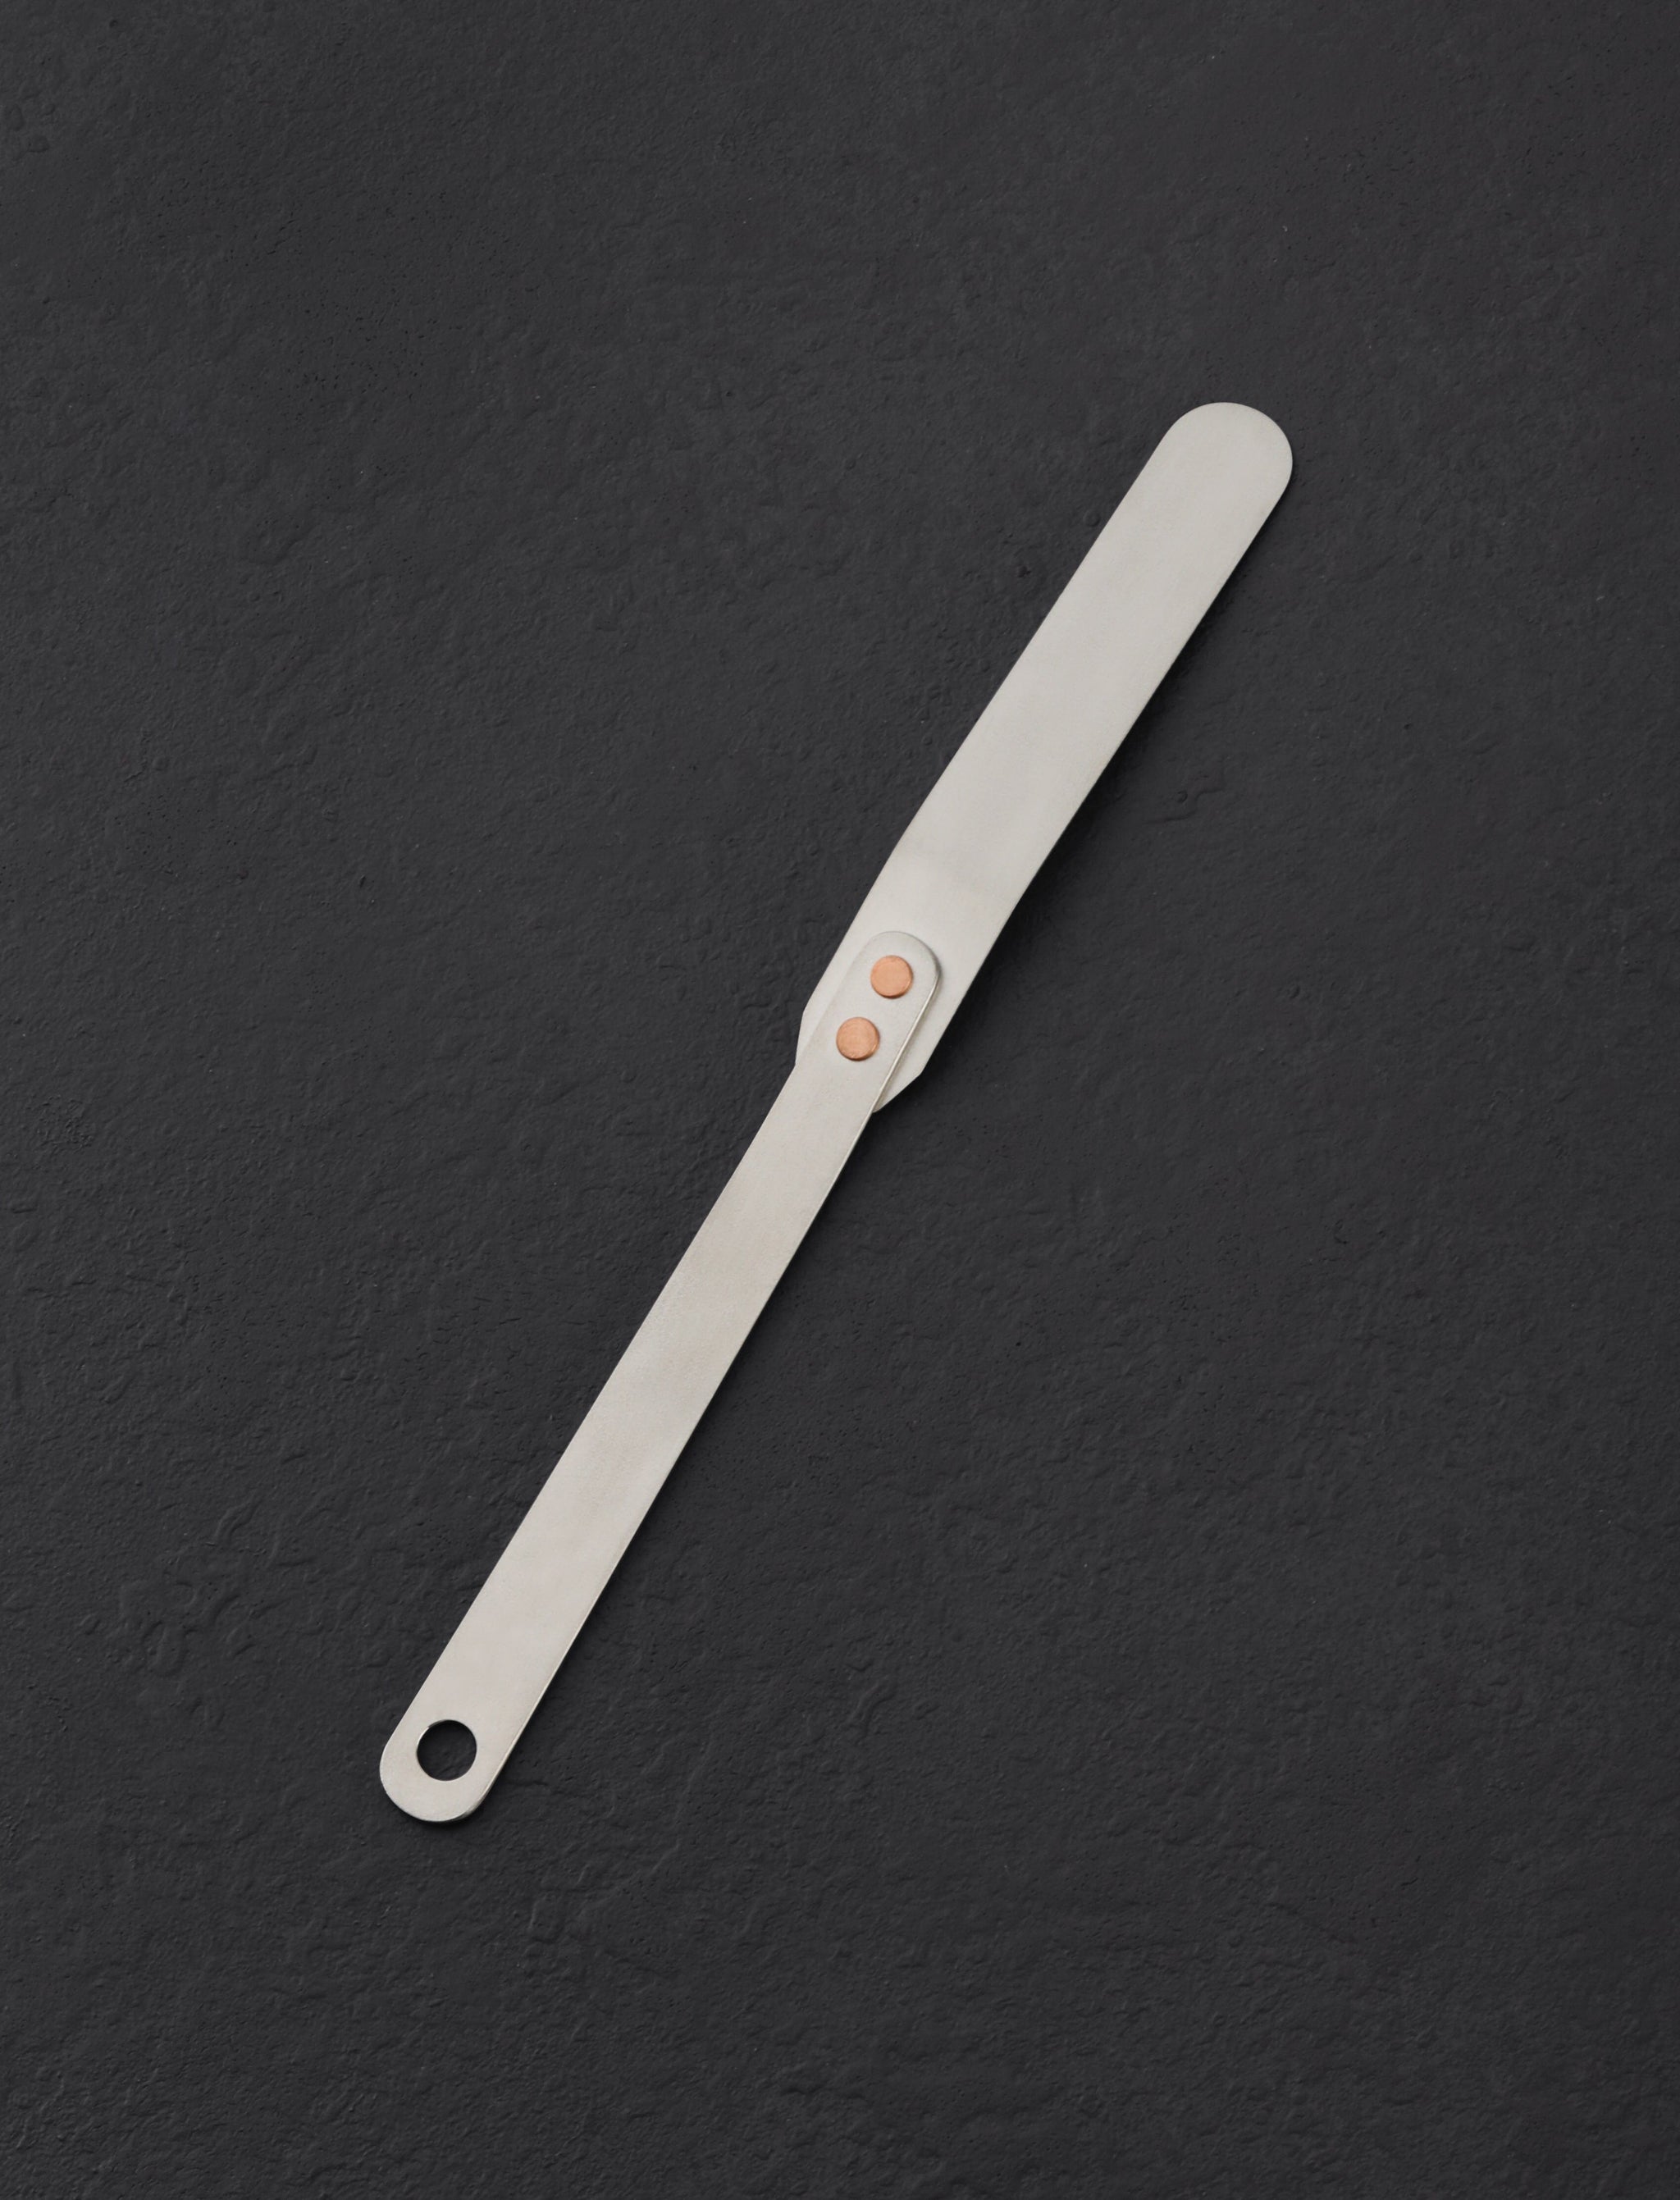 https://eatingtools.com/cdn/shop/files/spatulas-ben-tendick-oregon-tispats-mini-titanium-offset-spatula-43020301730067.jpg?v=1693334003&width=2048